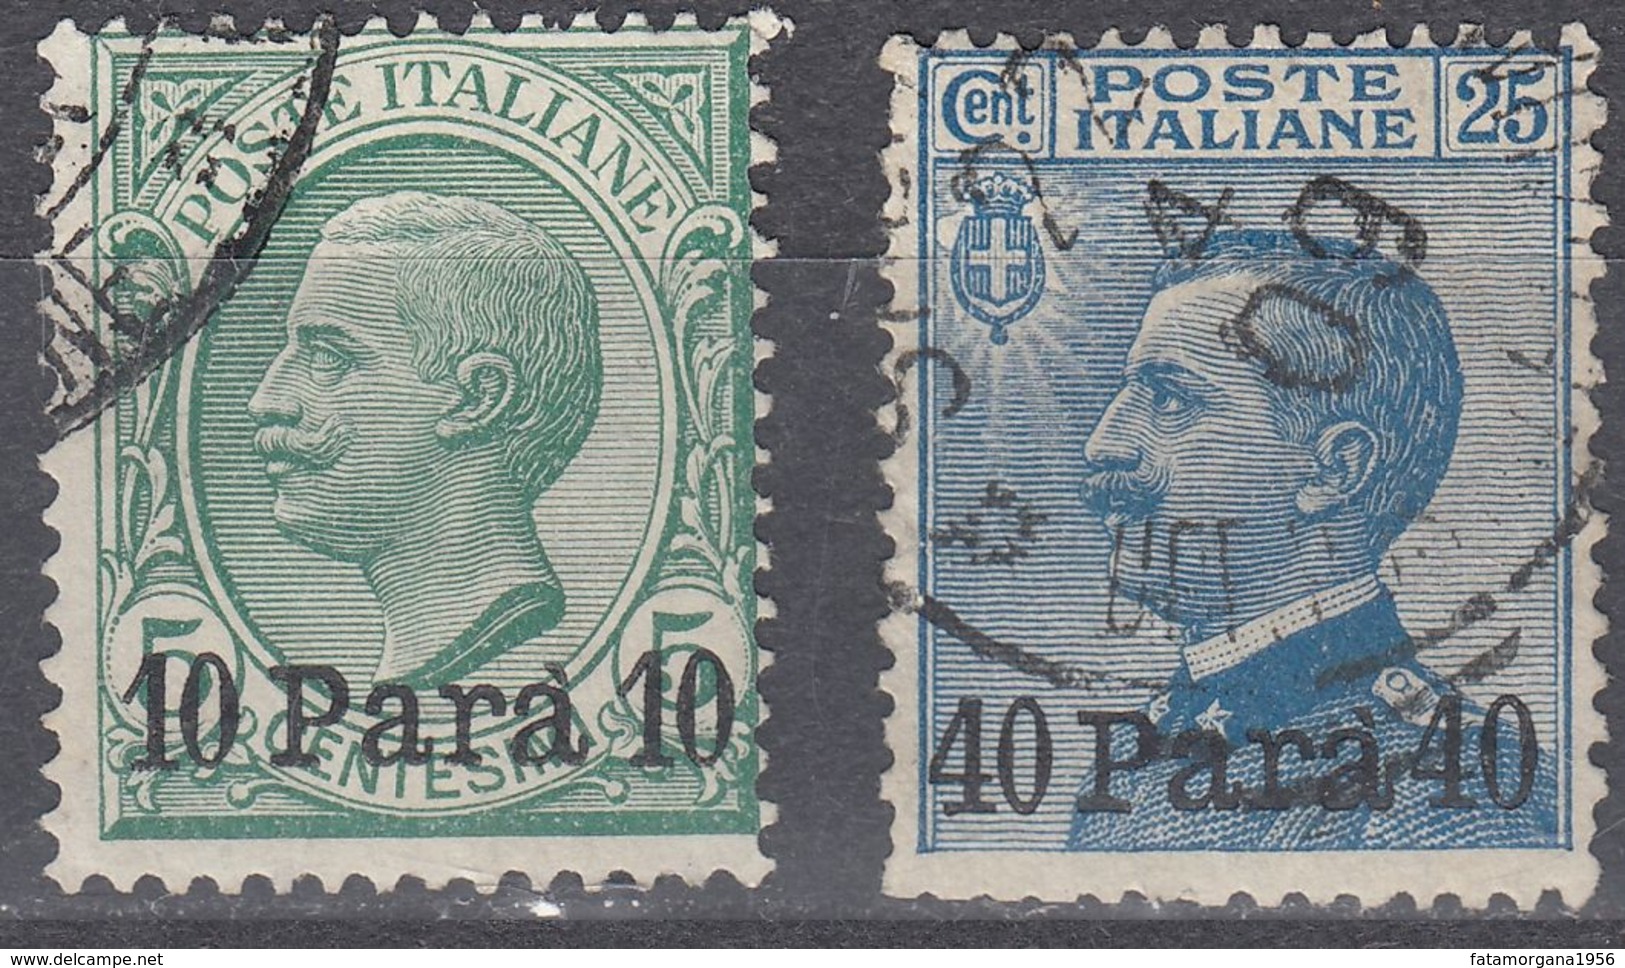 LEVANTE UFFICIO ITALIANO IN ALBANIA - 1902 - Lotto Di 2 Valori Usati: Yvert 21 E 23, Come Da Immagine. - Albanië